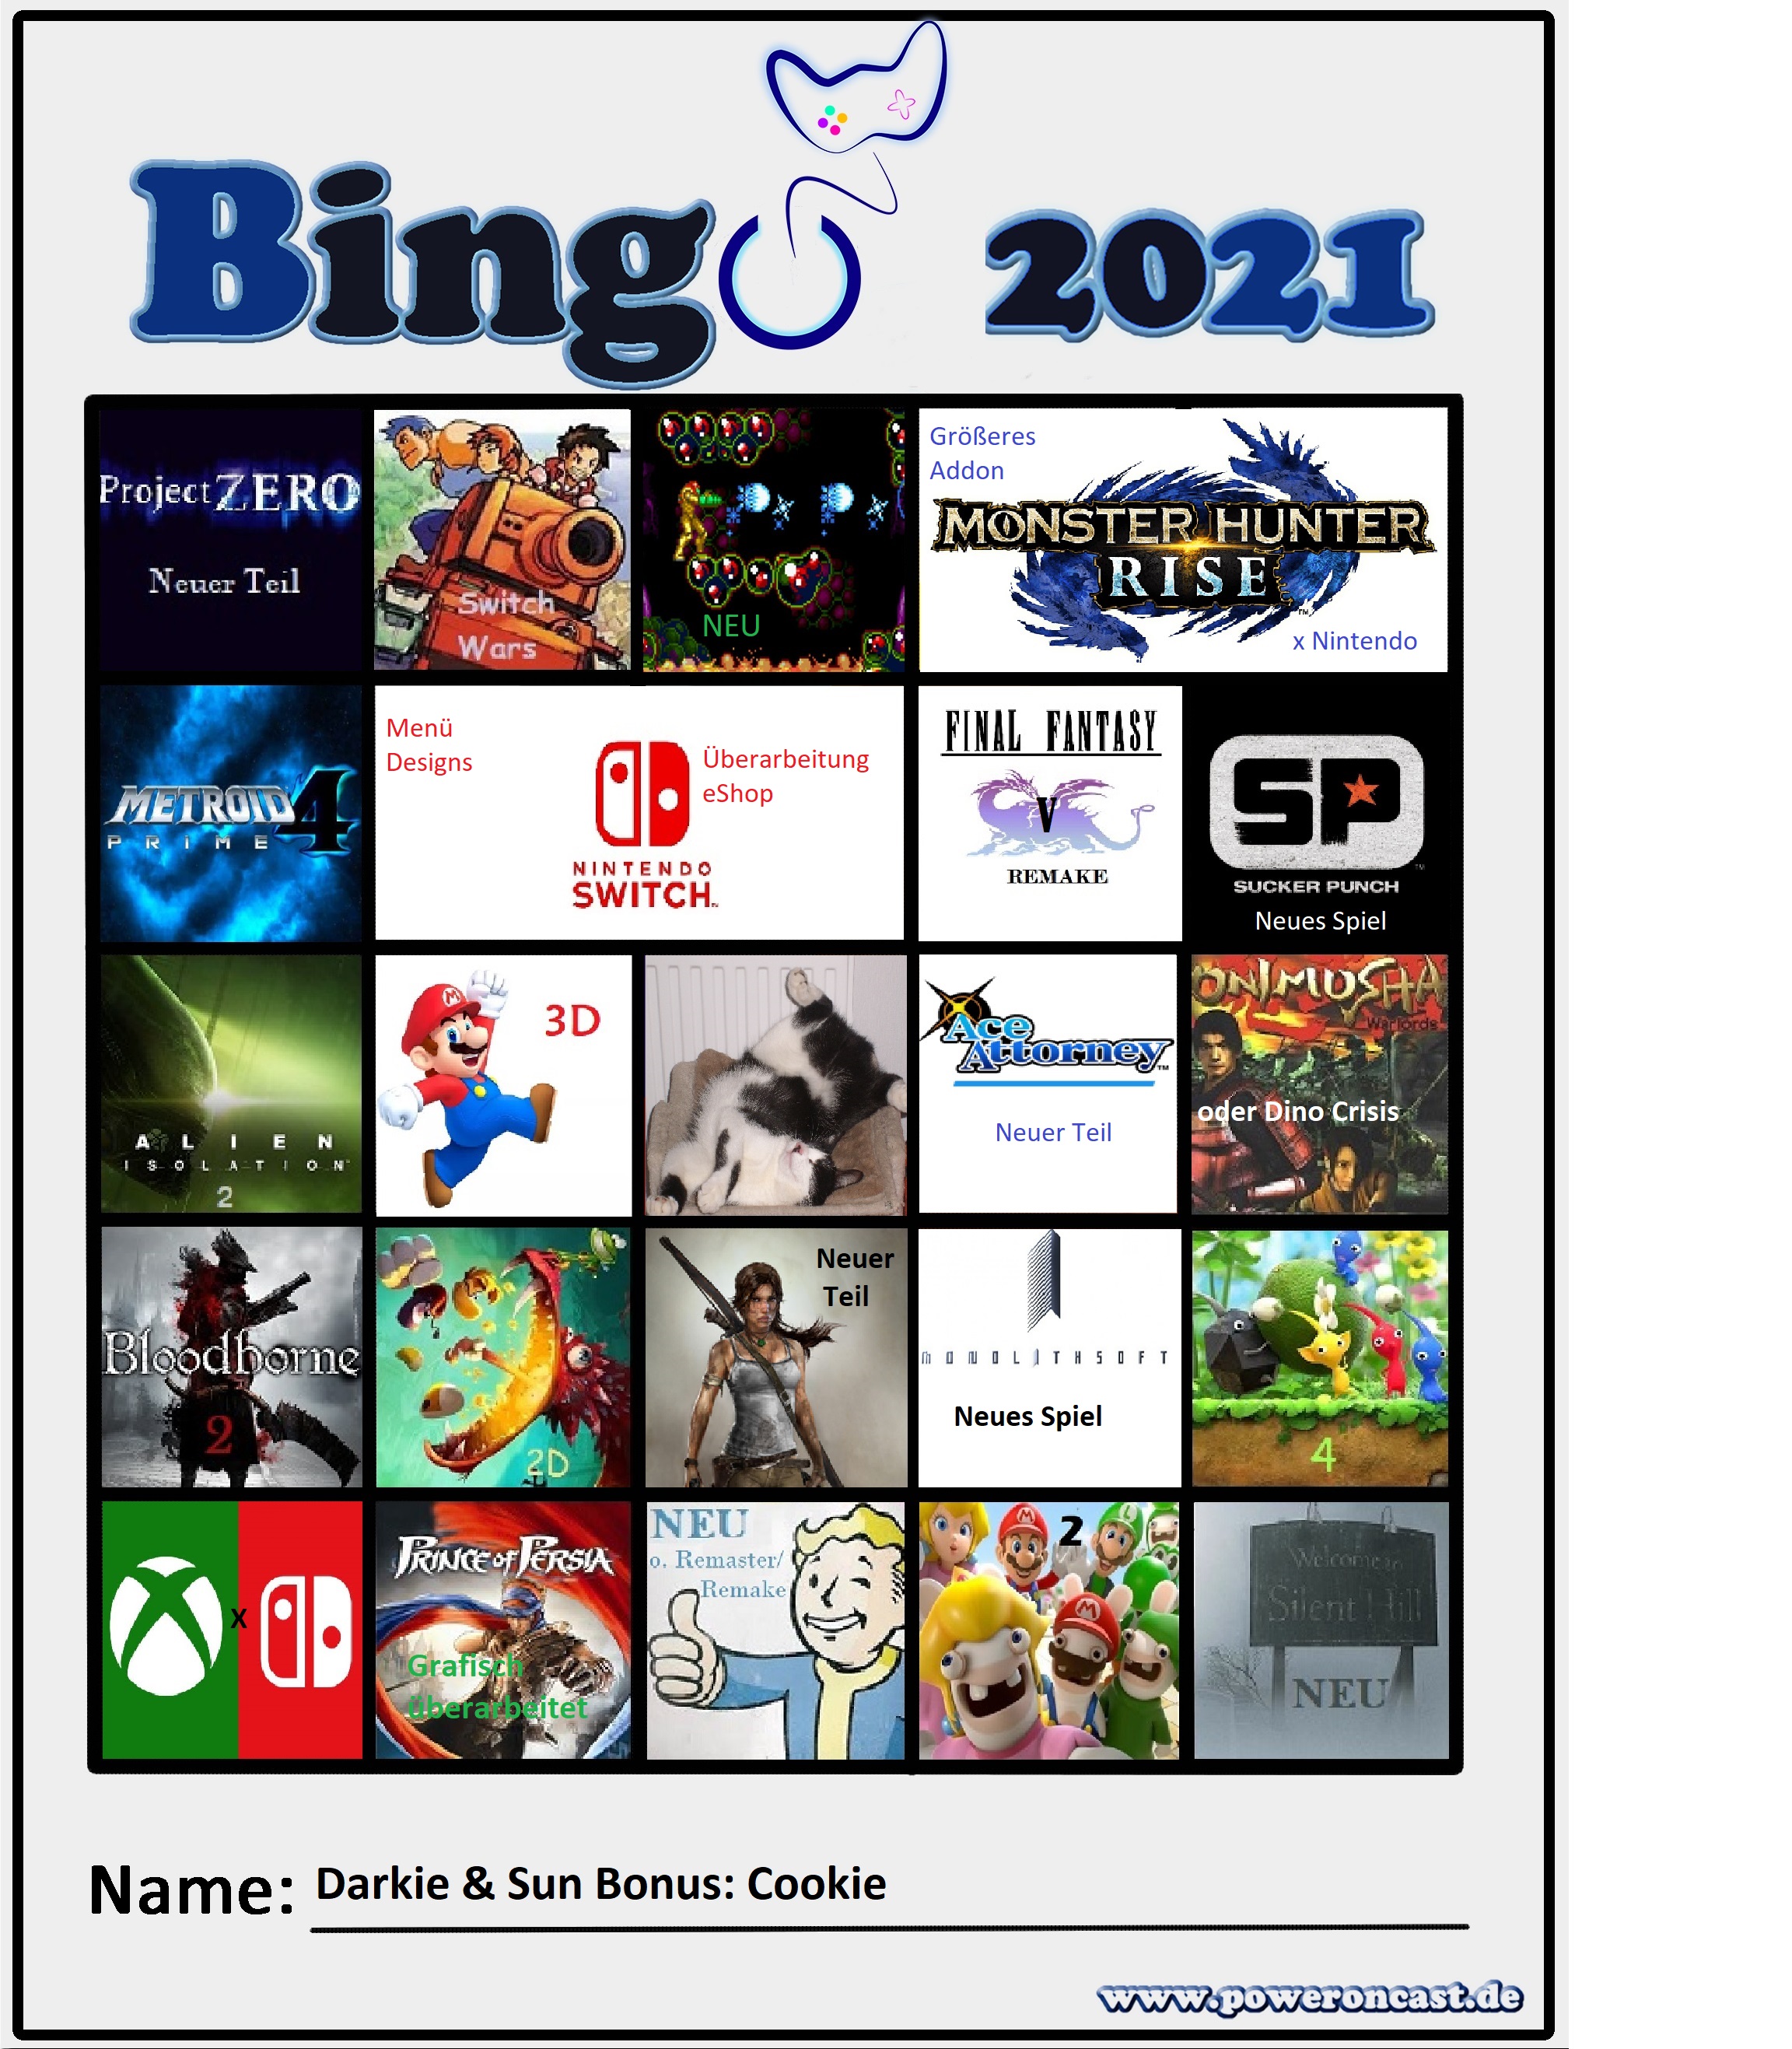 e3_bingo-2021_sun_darkie.jpg